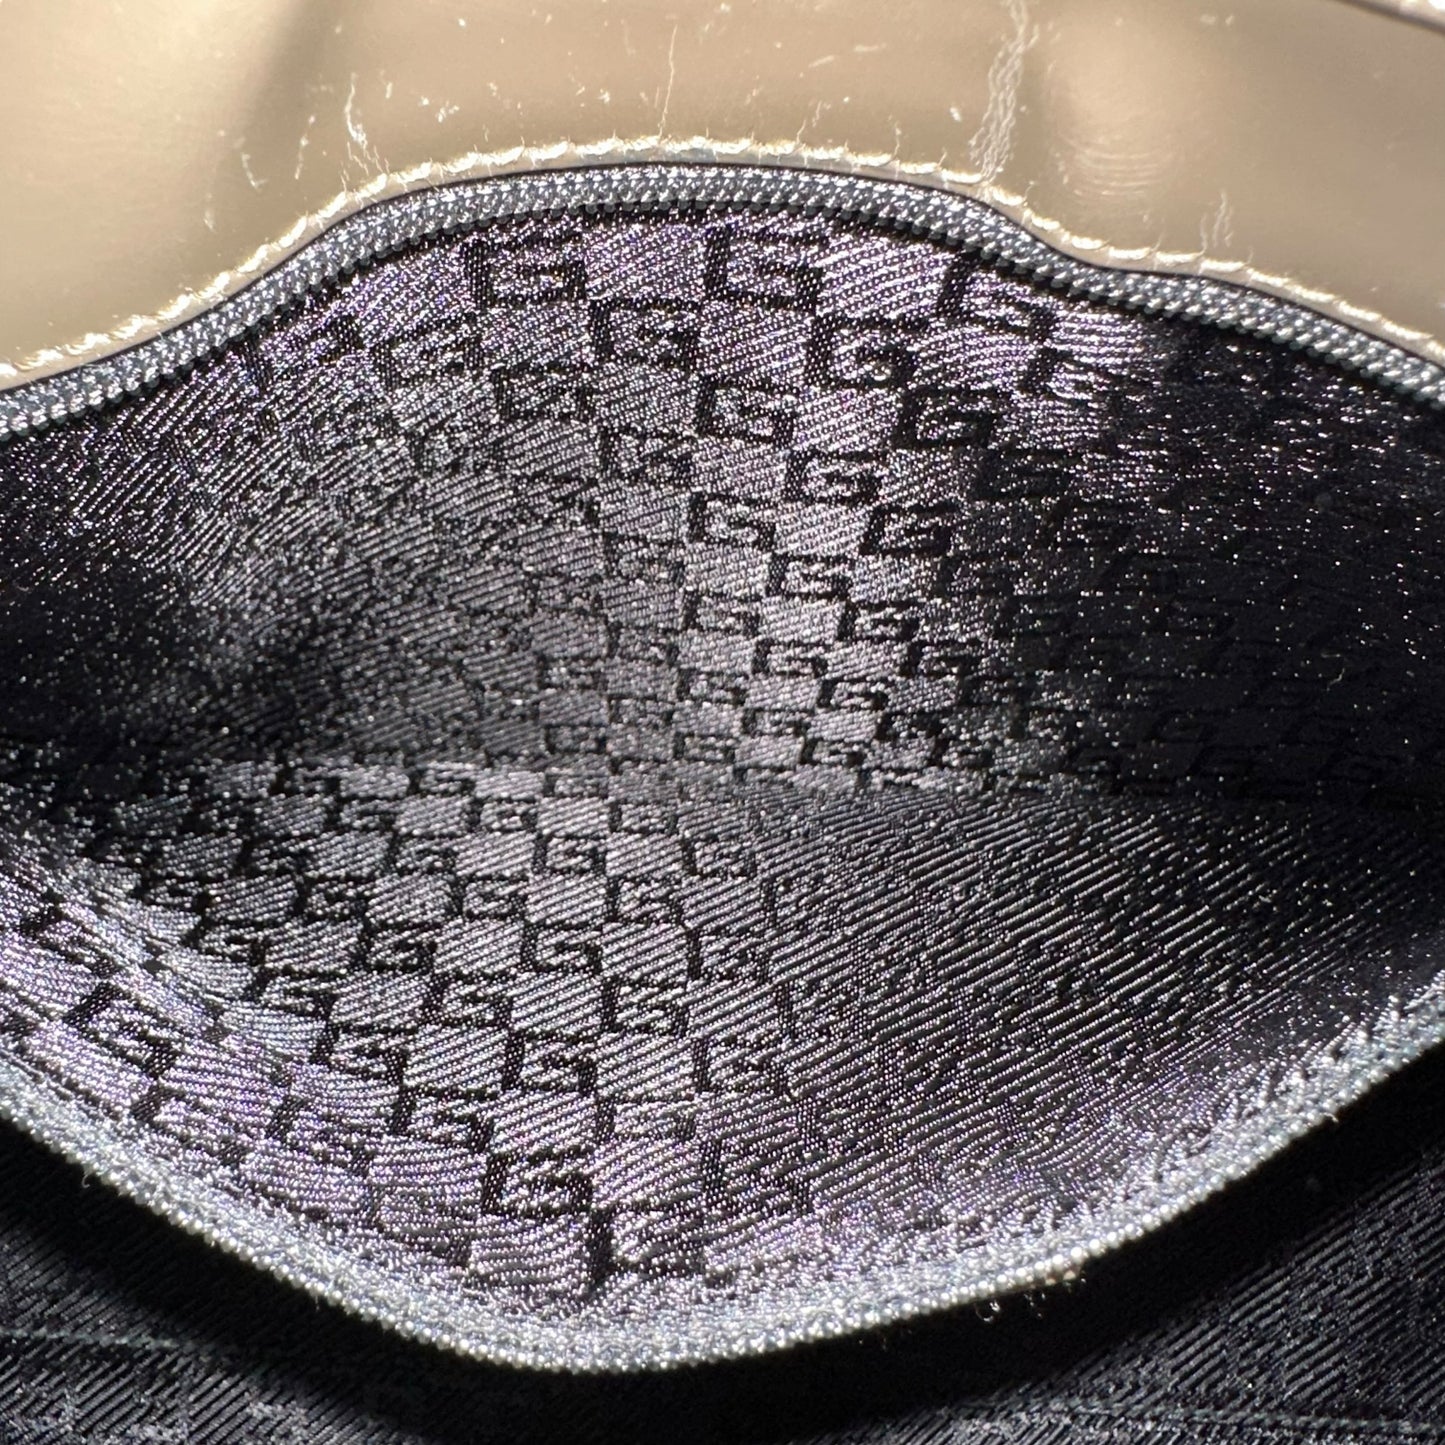 Gucci Bardot Patent Leather Shoulder Bag